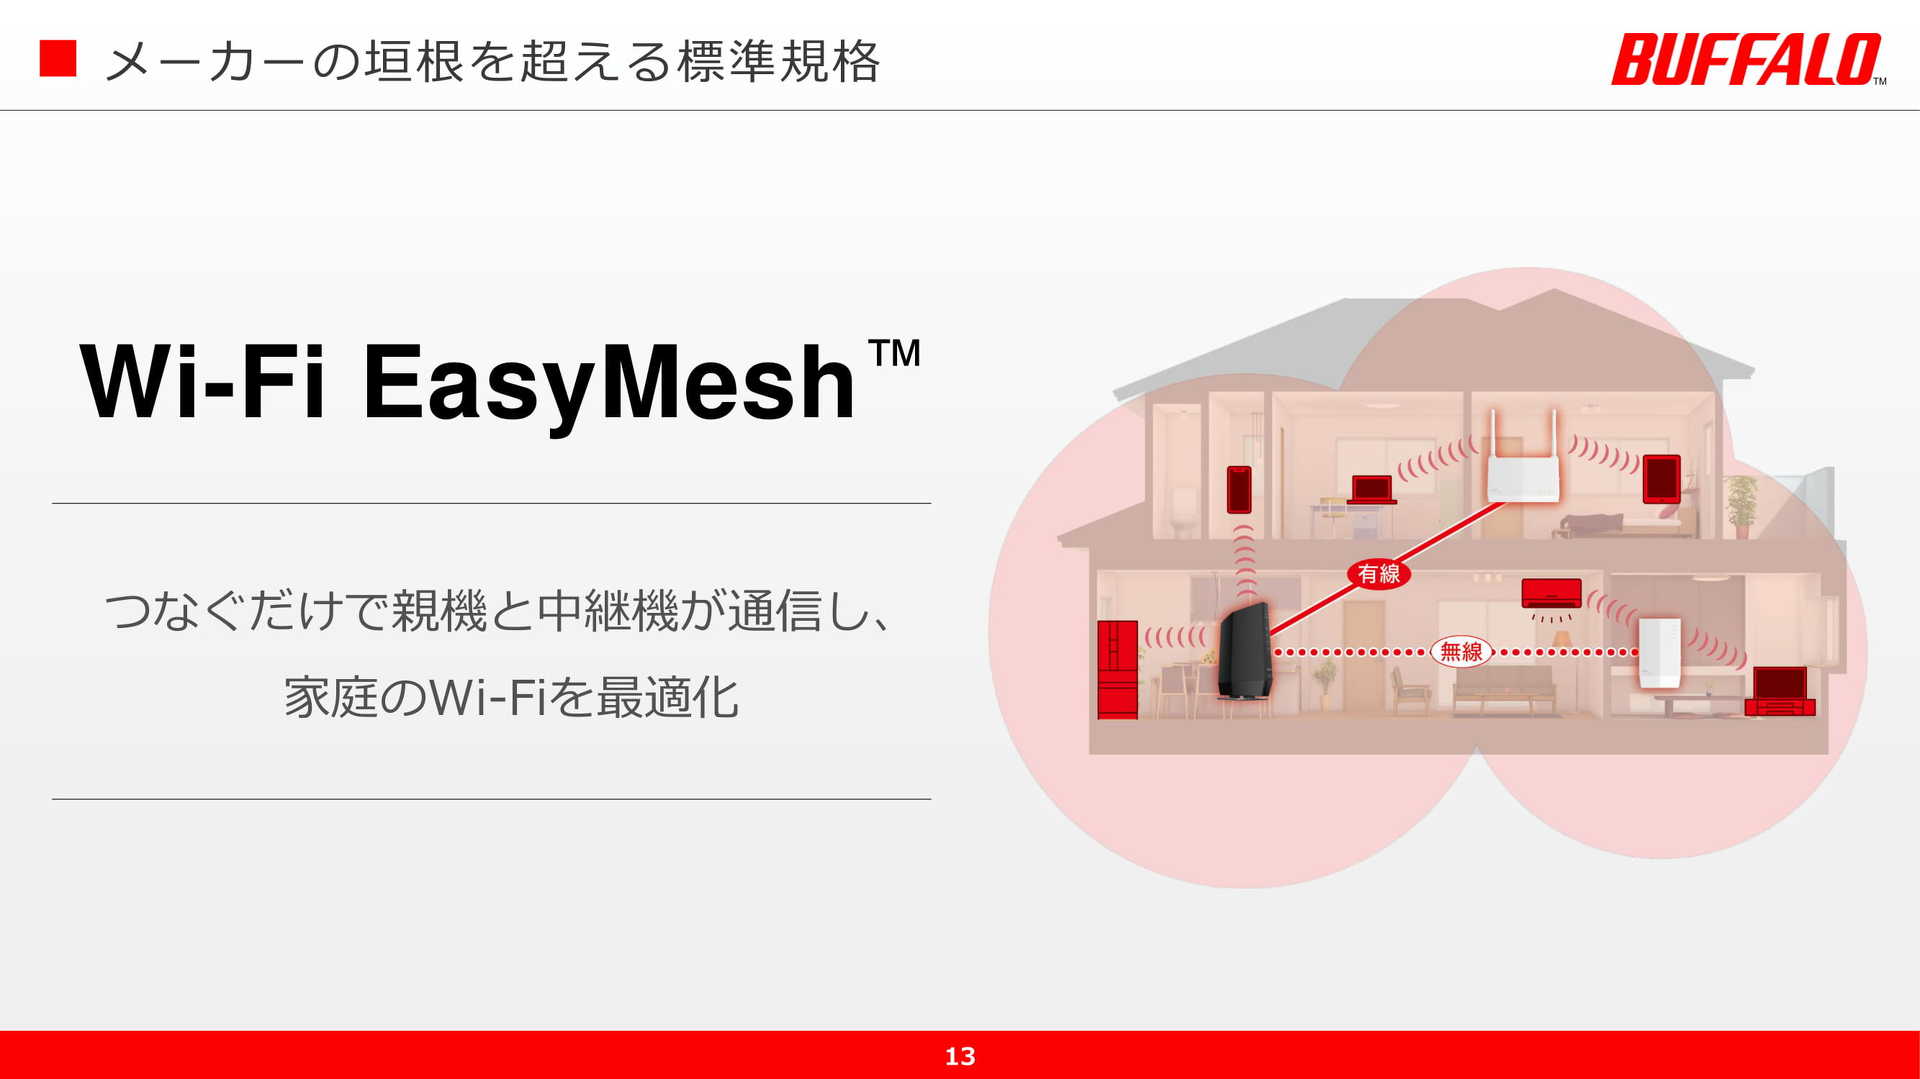 バッファロー、Wi-Fi 6ルーターと中継機を「Wi-Fi EasyMesh」に対応　他社製品ともメッシュネットワークを構築可能に